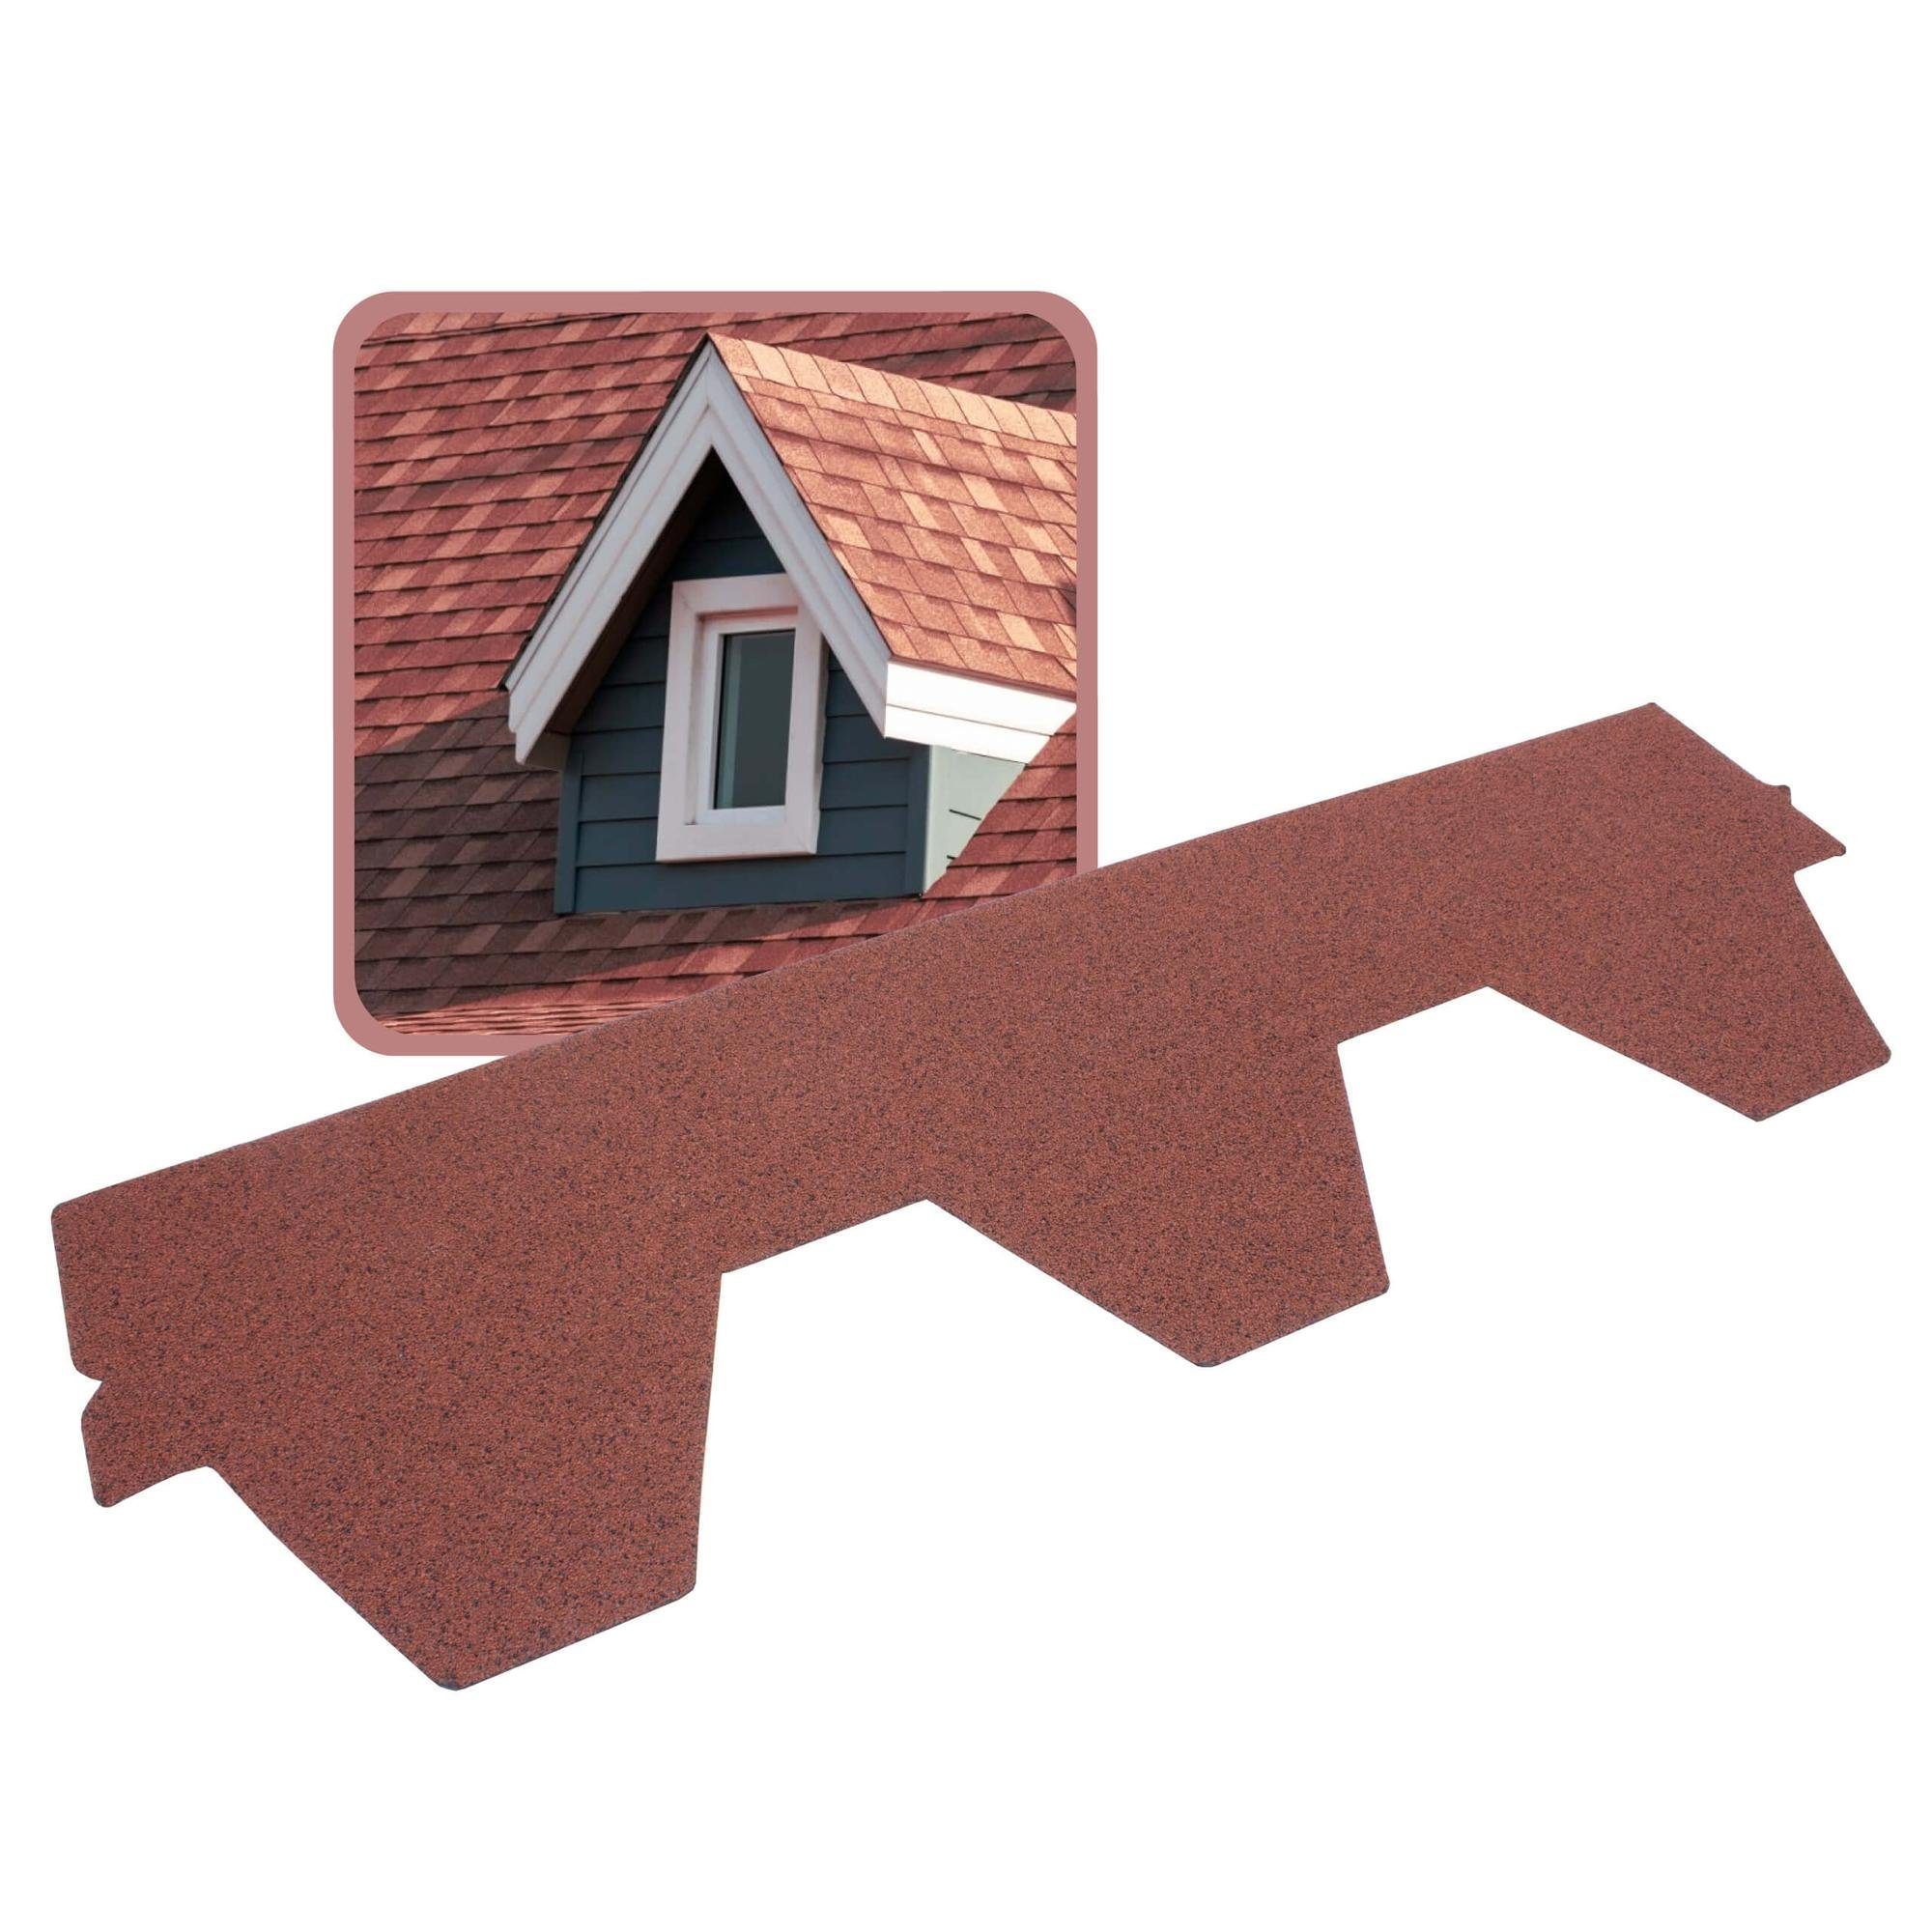 DAPRONA Dachschindeln Dachschindeln, Hexagonal Muster 1m x 32cm, Rot, (20-St), Bitumenschindeldach für Gartenhaus, Carport